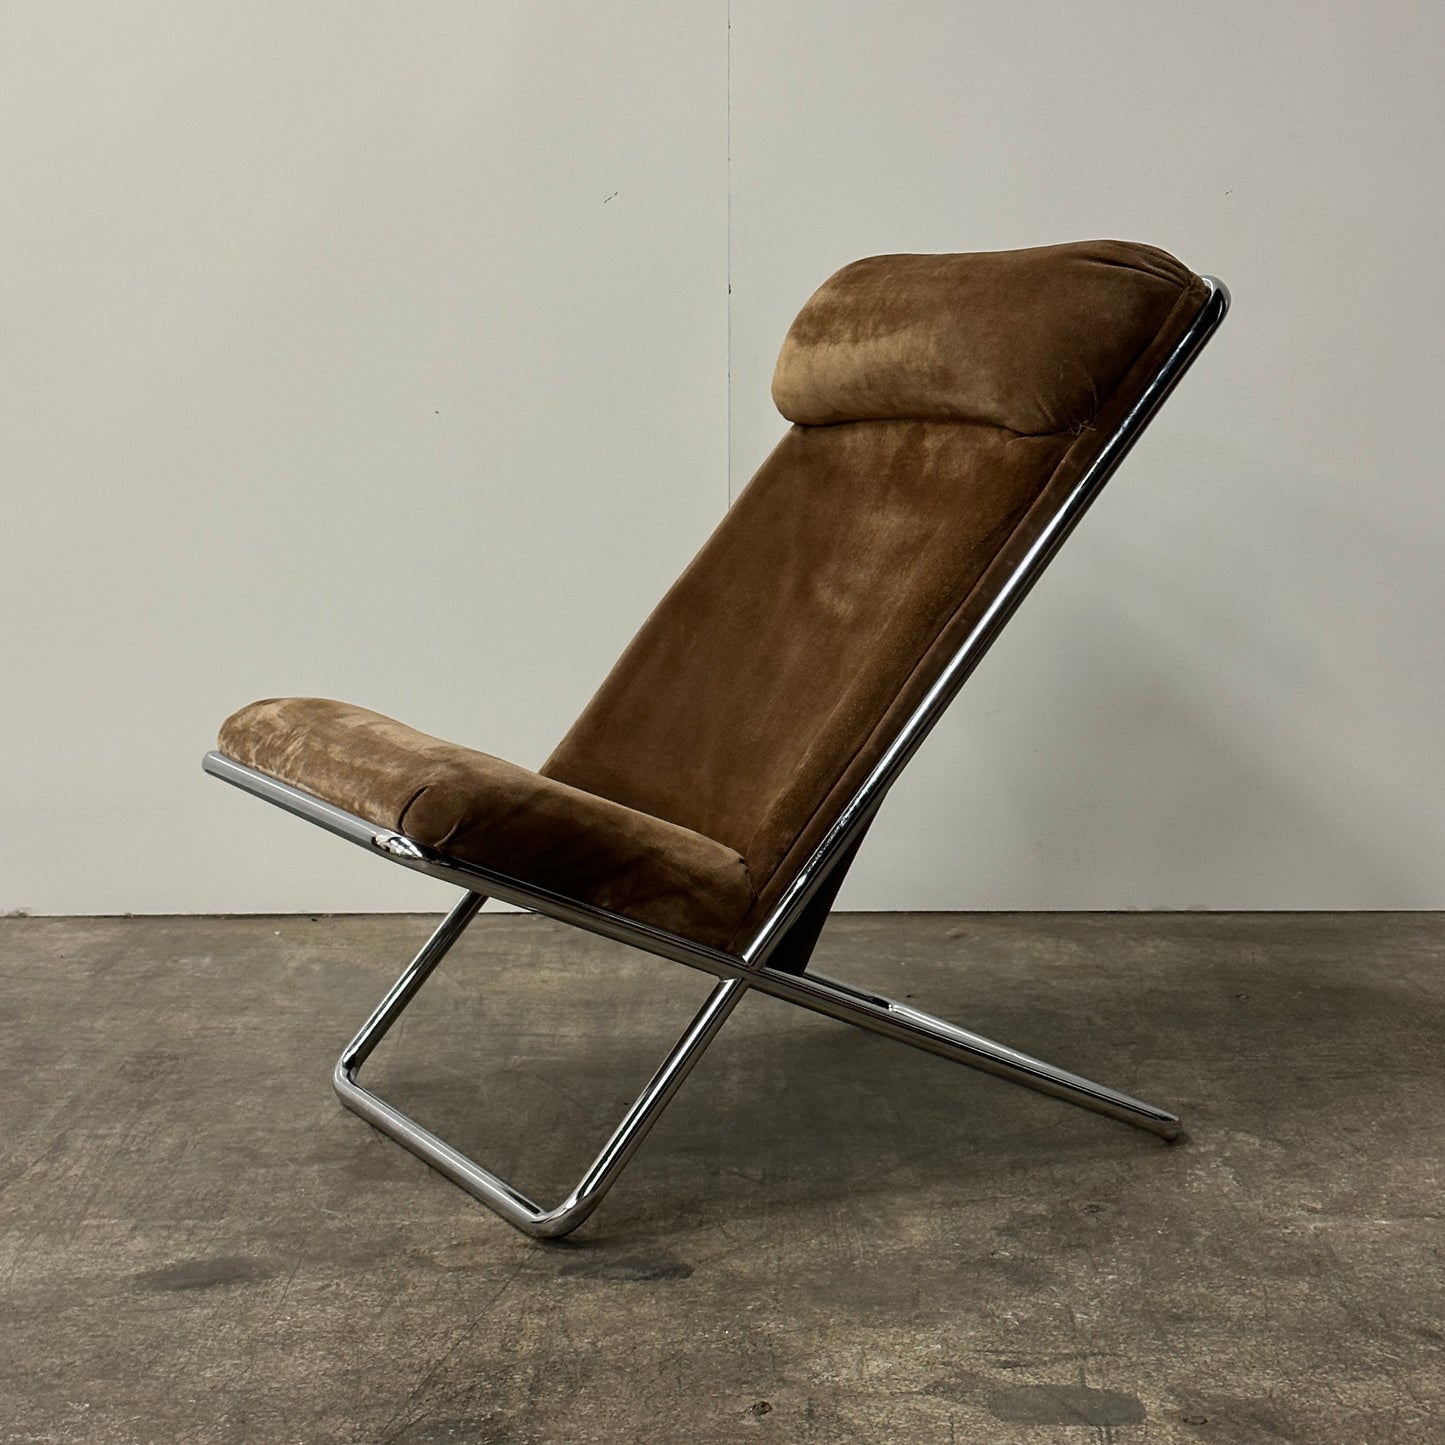 Scissor Chair by Ward Bennett in Original Brown Suede